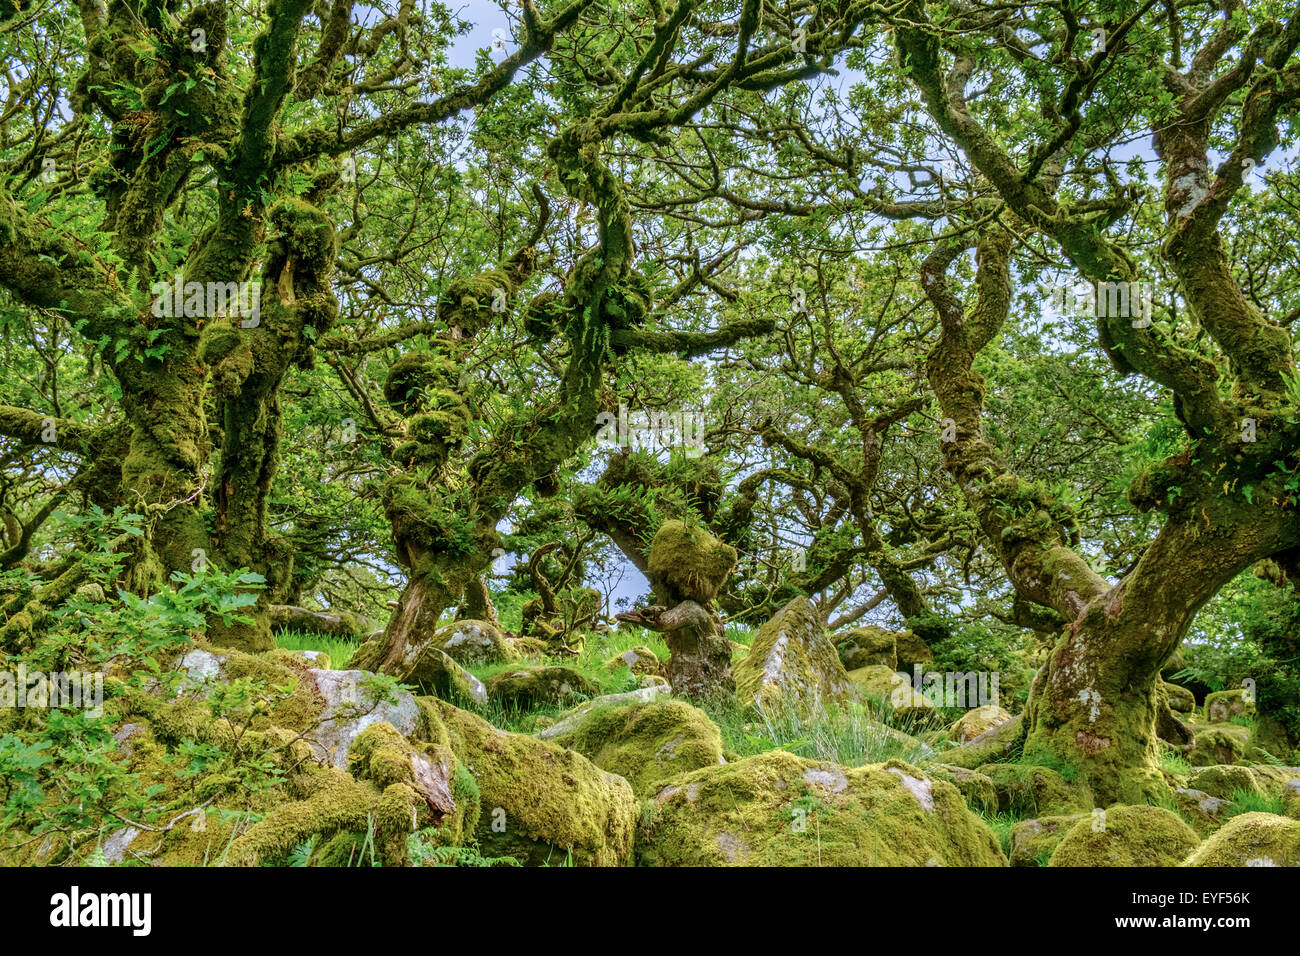 Wistman Holz, ein Höhen-Eichenholz (Quercus Robur), in der Nähe von zwei Brücken, Dartmoor National Park, Devon, England, UK Stockfoto